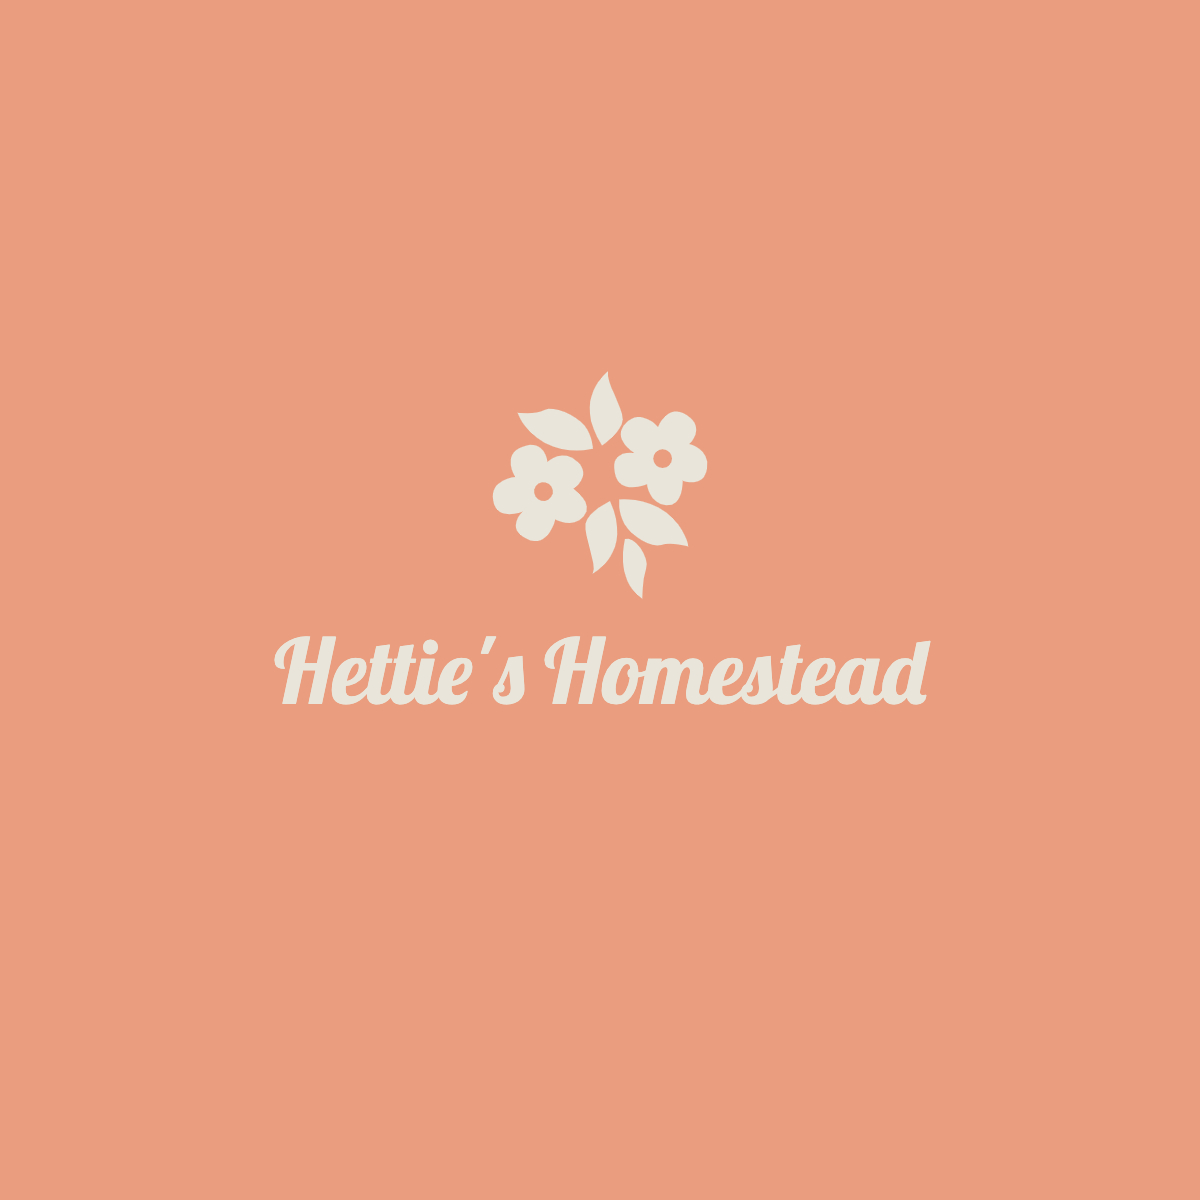 Hettie’s Homestead